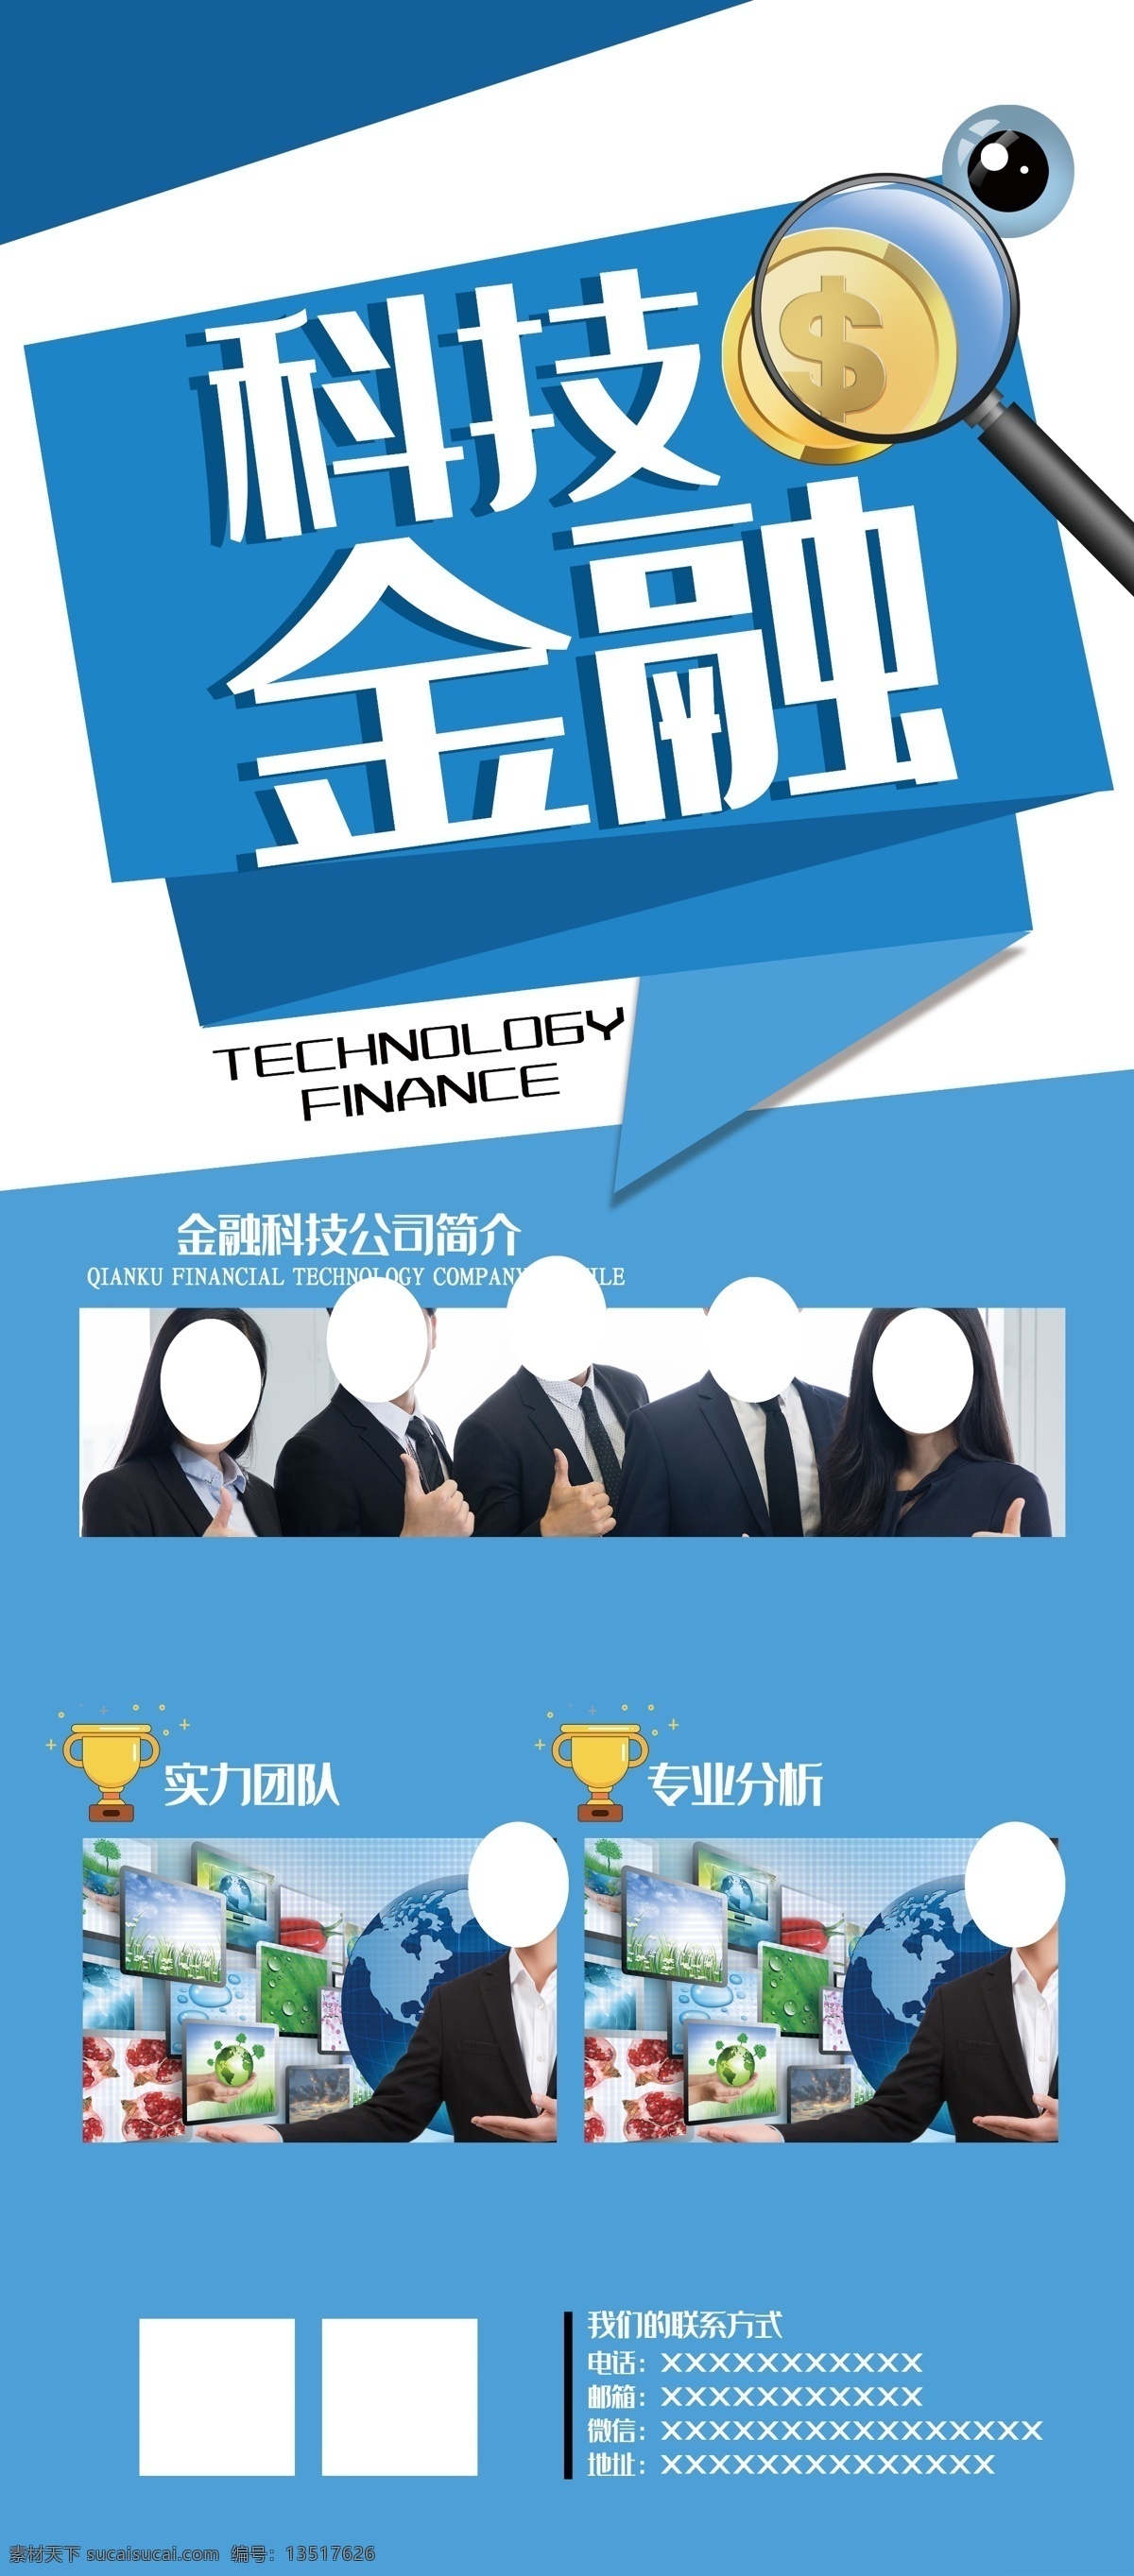 科技金融图片 科技 科技感 金融 画册 折页 海报 周刊 插画 蓝色 广告